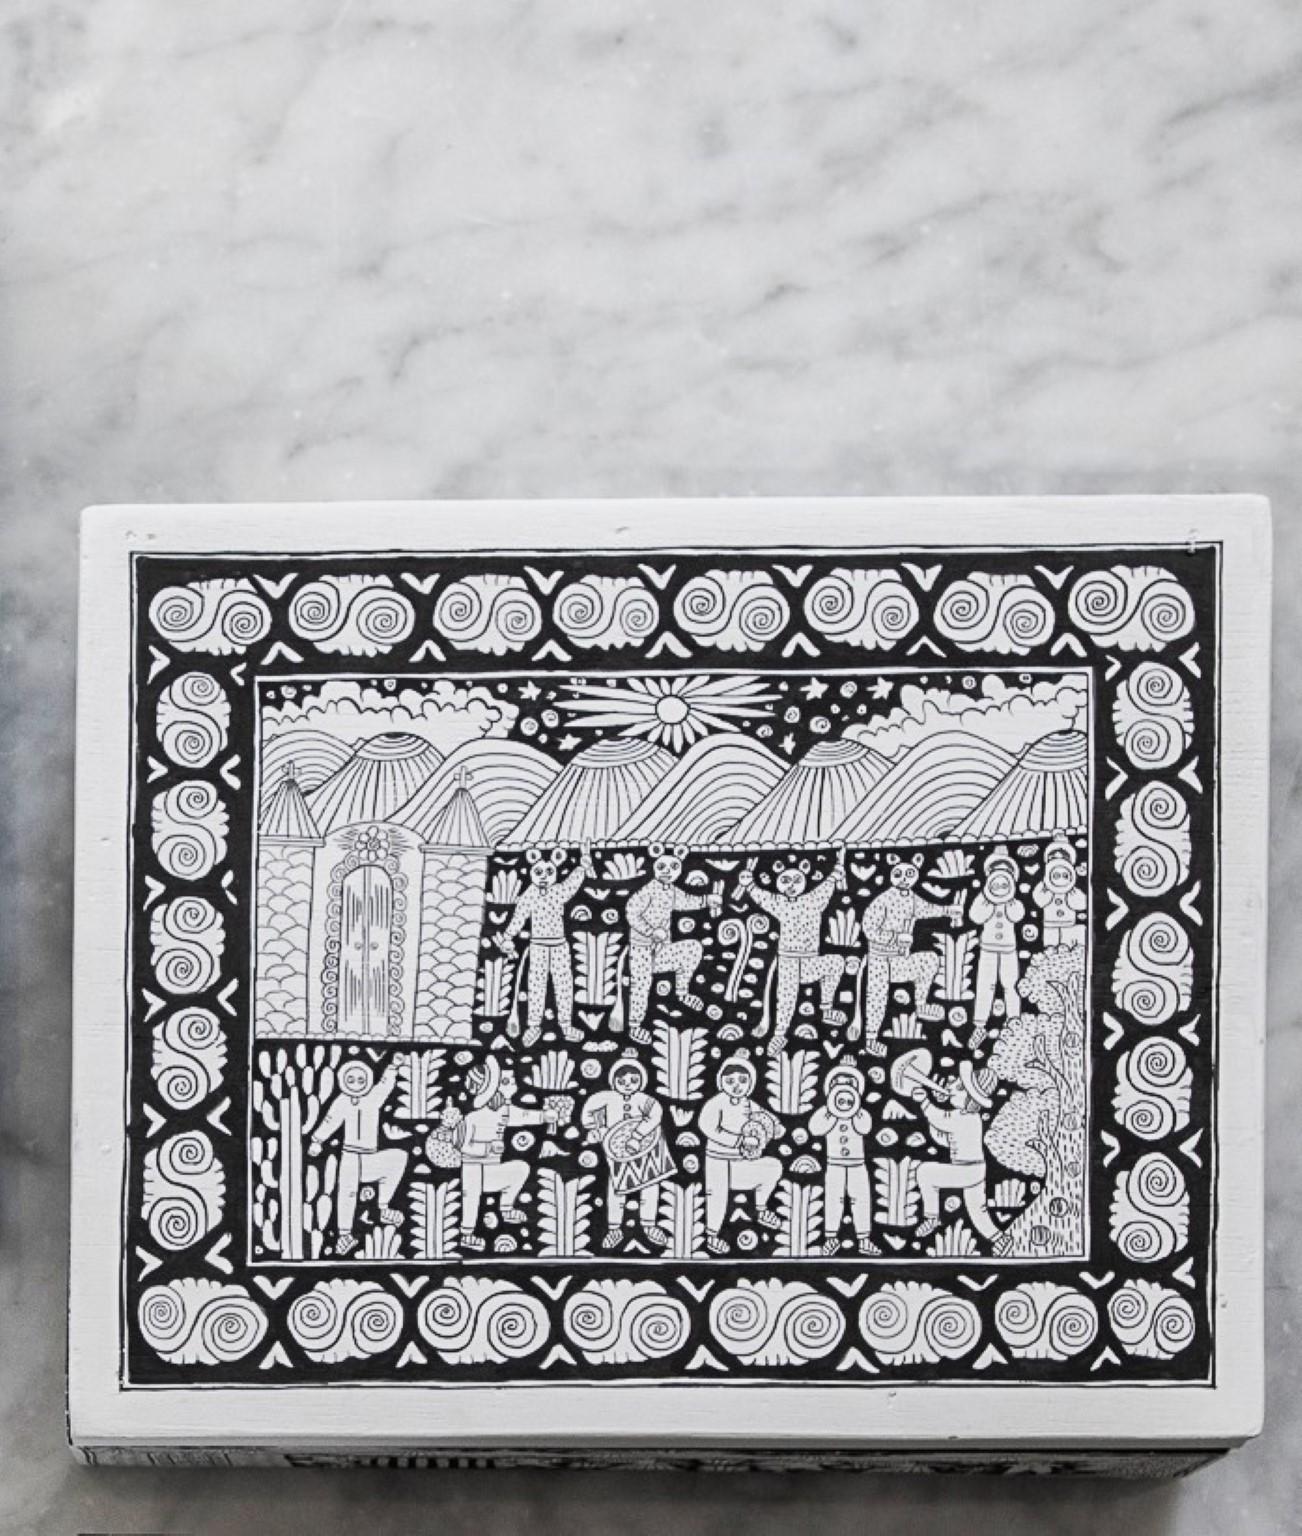 Boîte Xalitla par Onora
Dimensions : 25 x 20 cm
Matériaux : Bois peint à main levée

Boîte à thé peinte à la main de Xalitla, Guerrero. Les scènes peintes sur chaque pièce représentent la vie quotidienne dans cette région de Guerrero, de